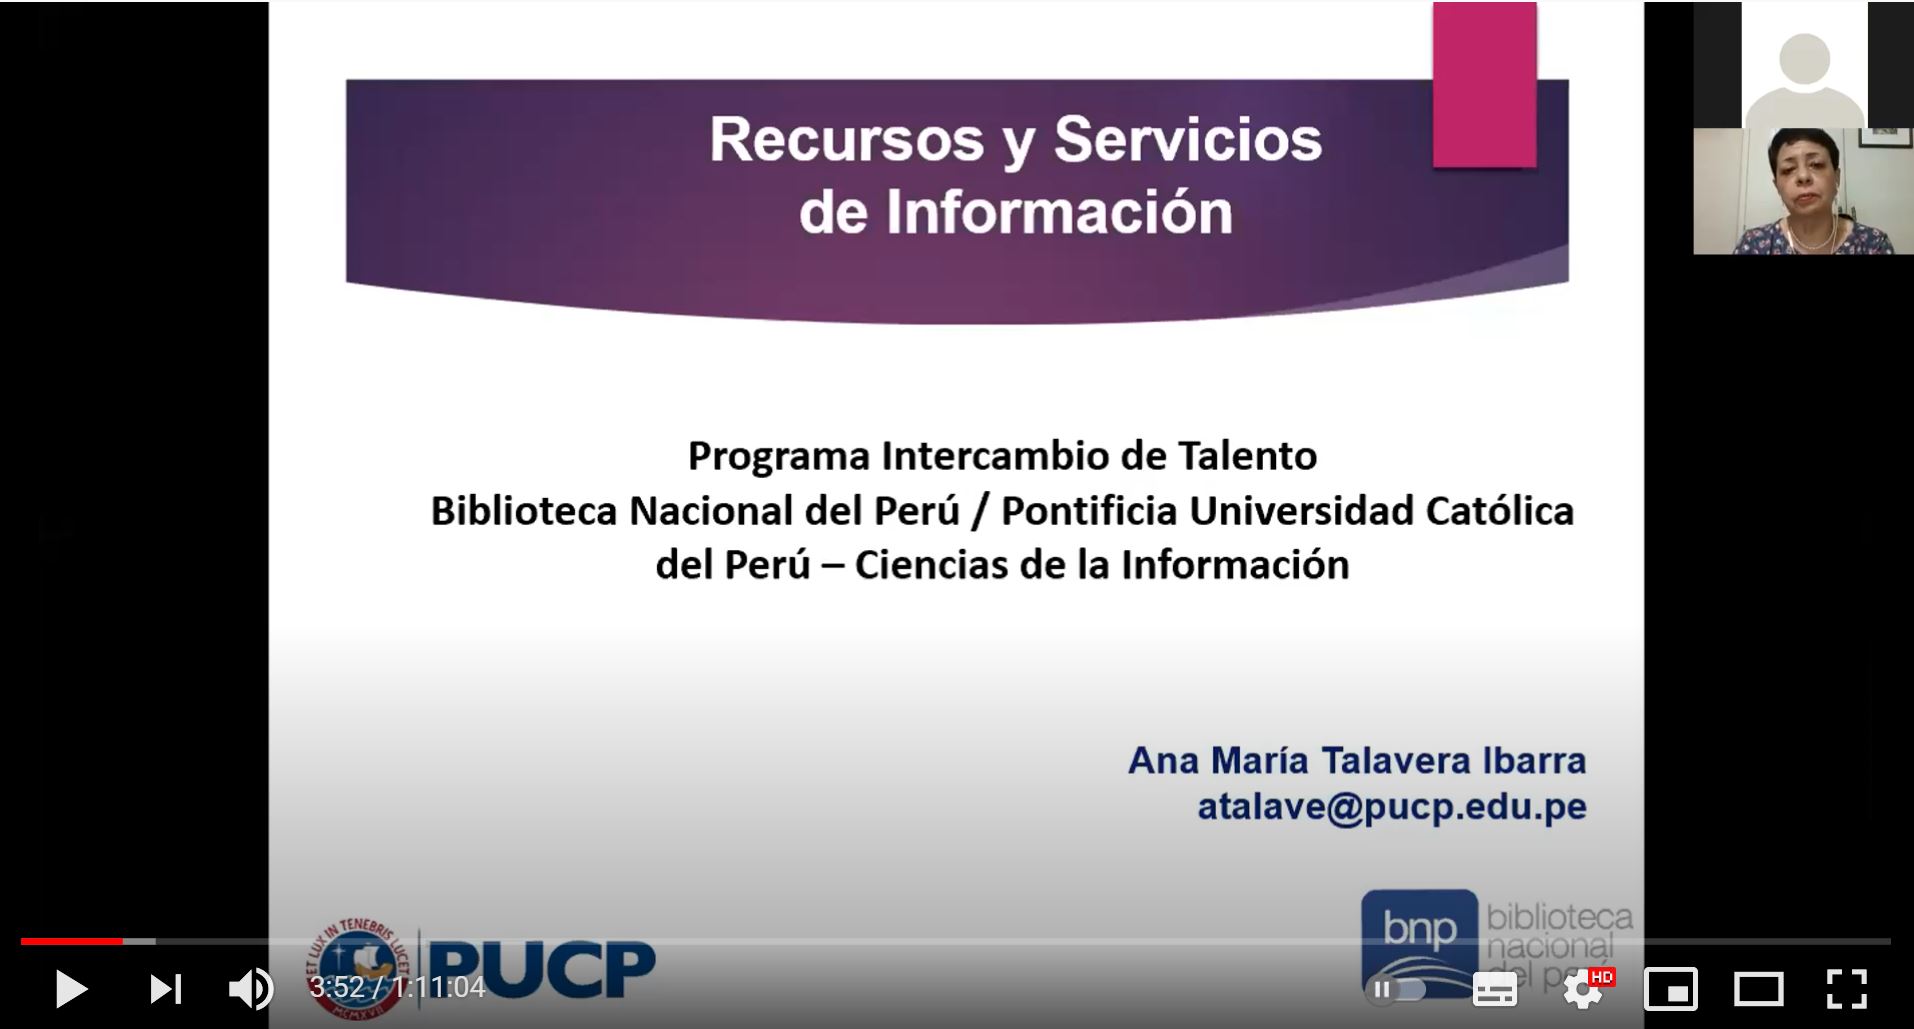 Especialidad de Ciencias de la Información y Biblioteca Nacional del Perú: Programa Intercambio de Talento 2021 [video]